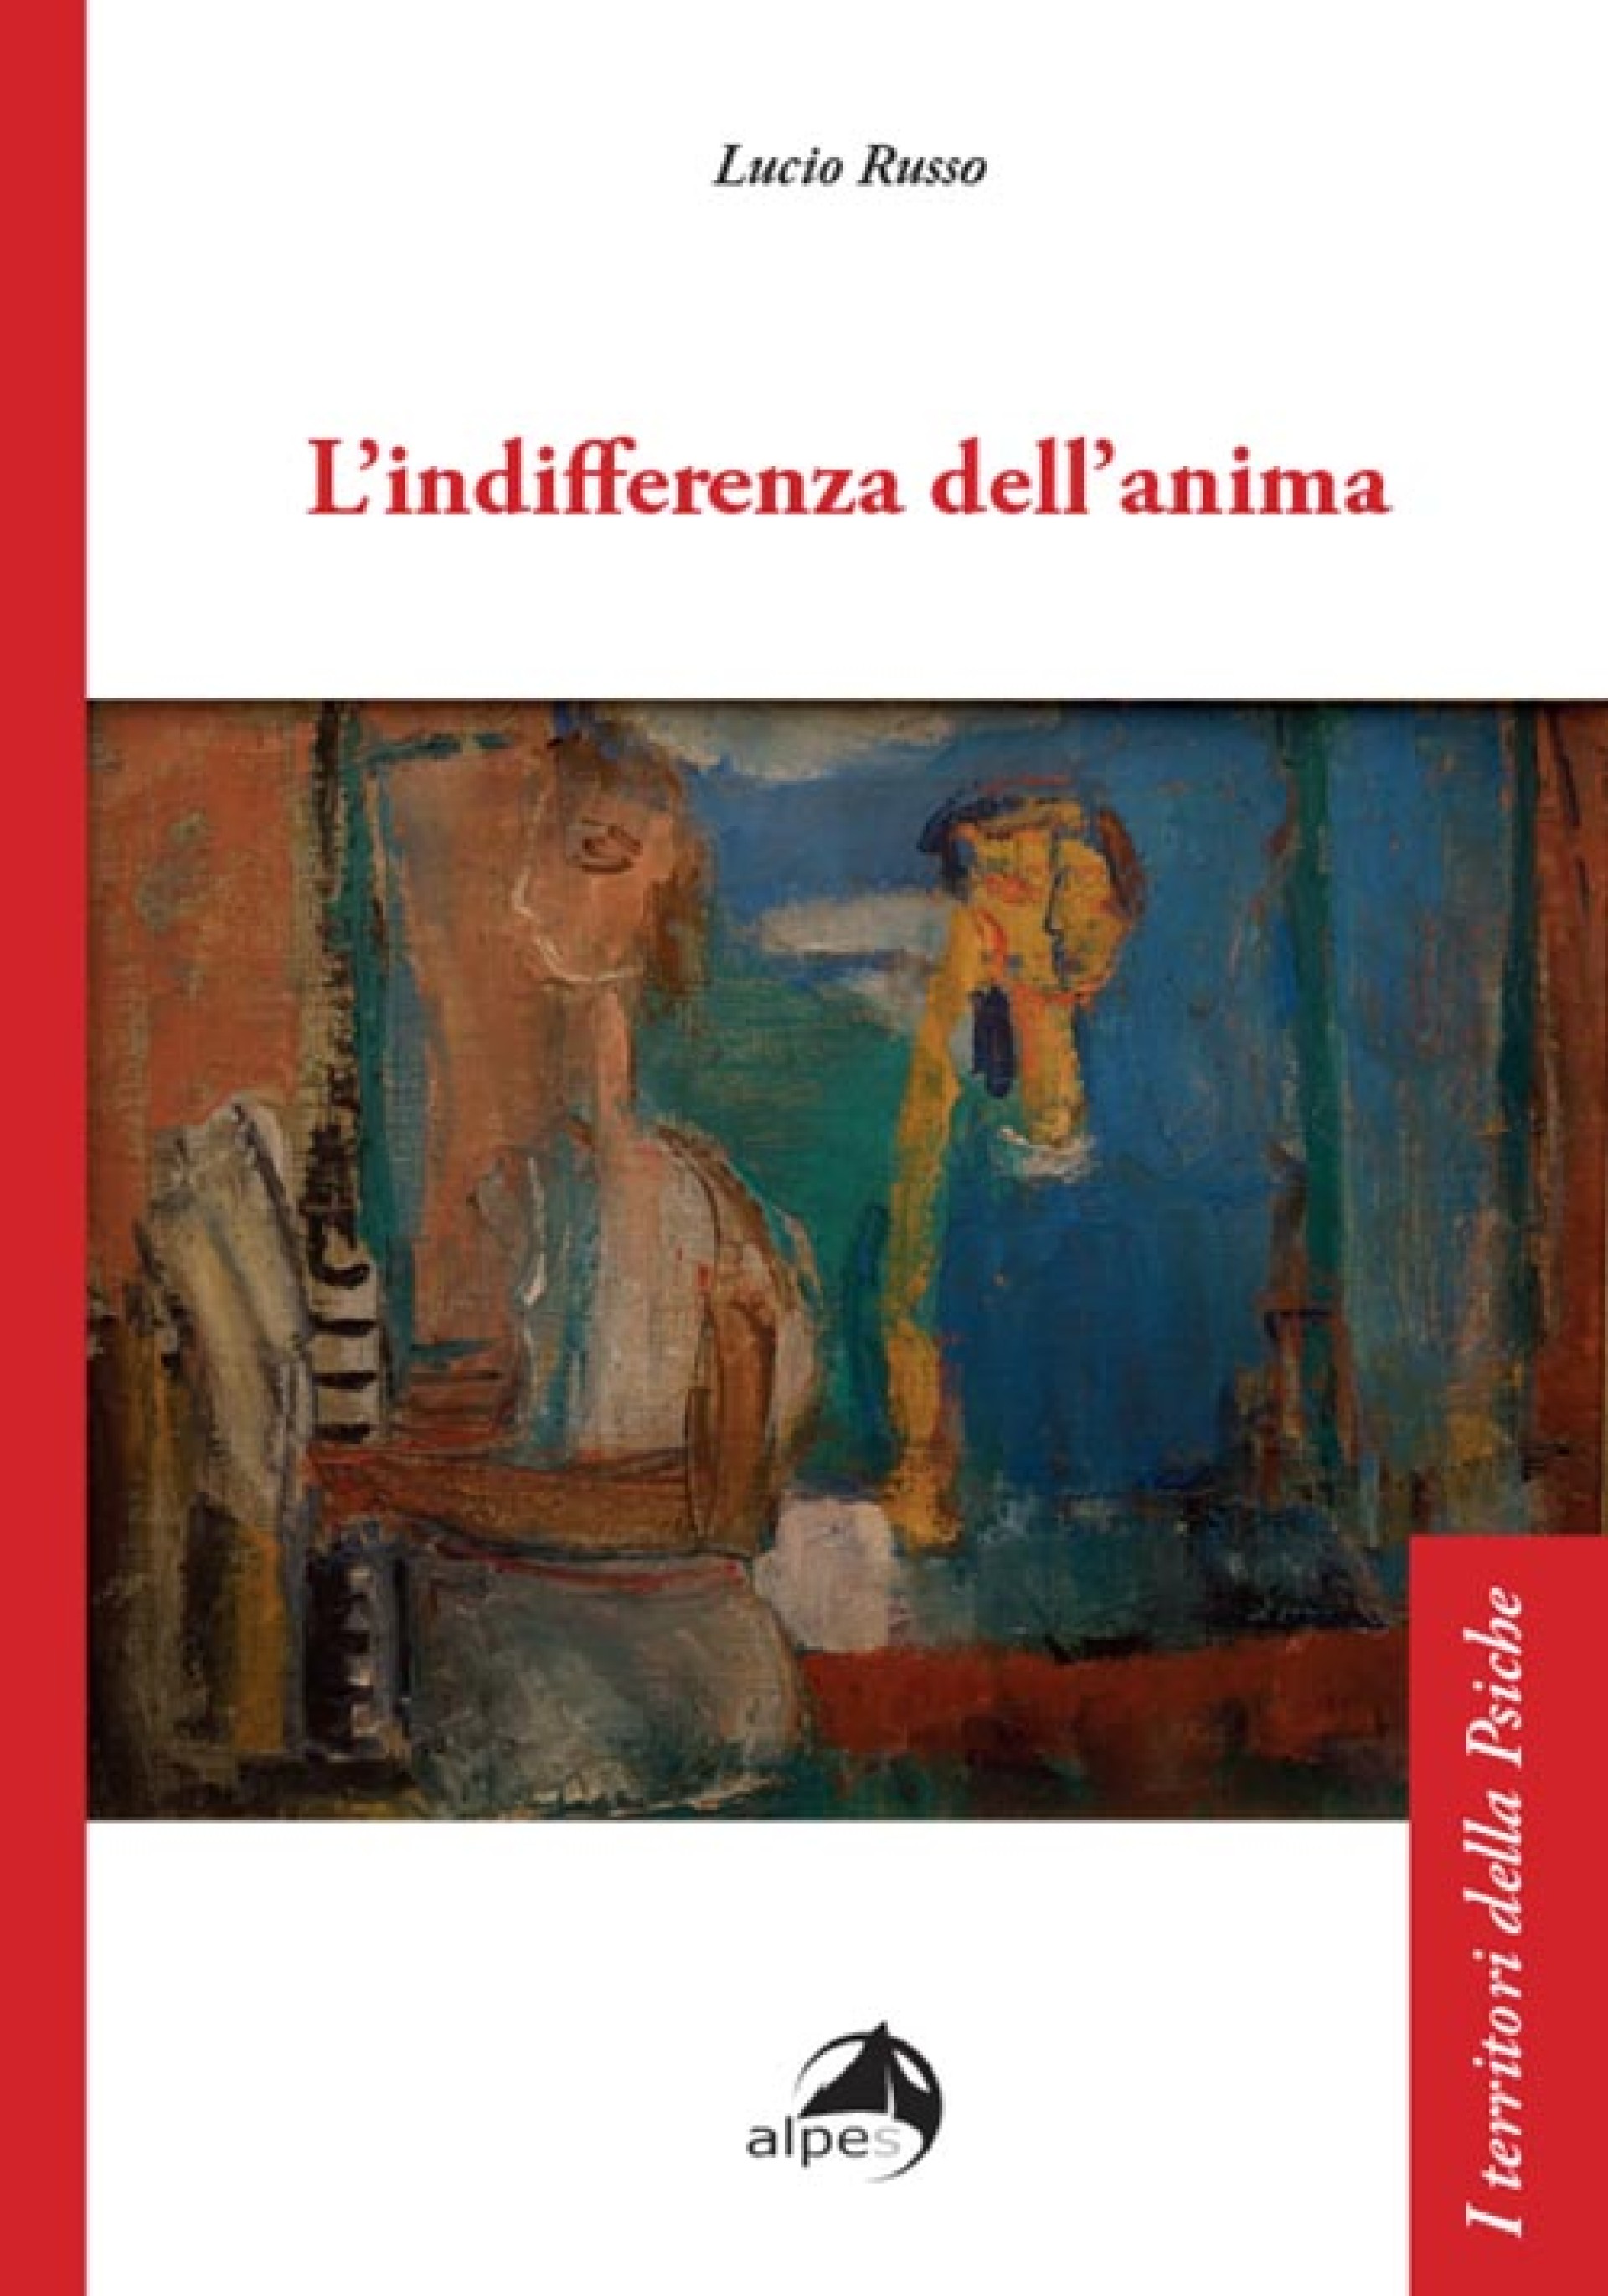 Sabato 10 febbraio ore 9:30 - Presentazione della ristampa aggiornata de "L'INDIFFERENZA DELL'ANIMA" di Lucio Russo, Alpes Edizioni.